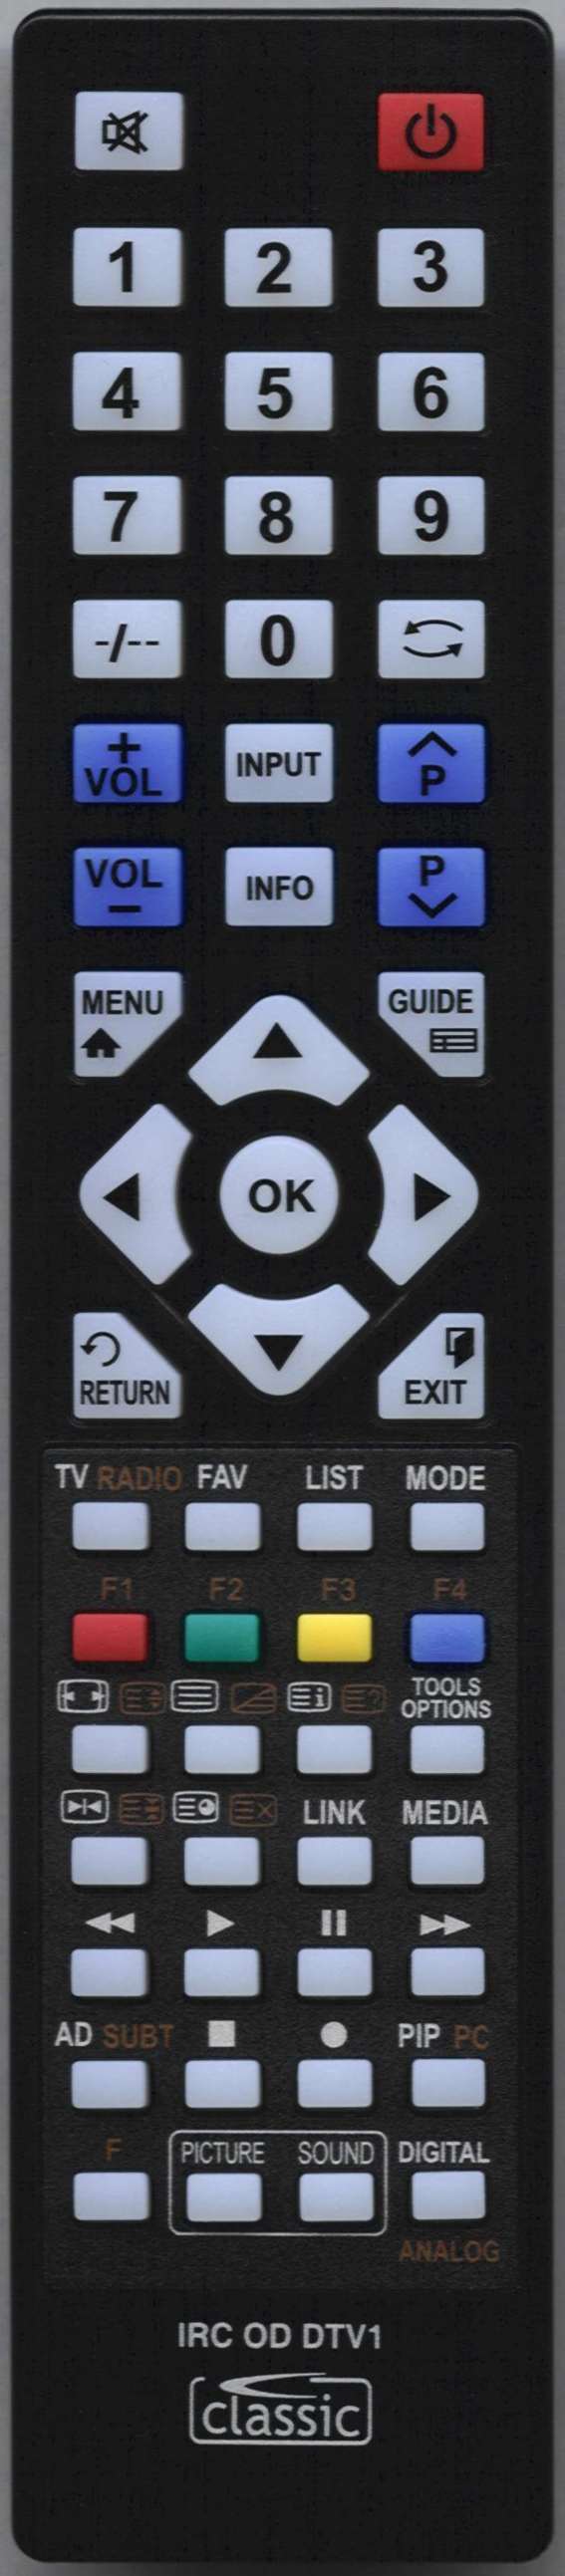 HISENSE PDP 5010EU Remote Control